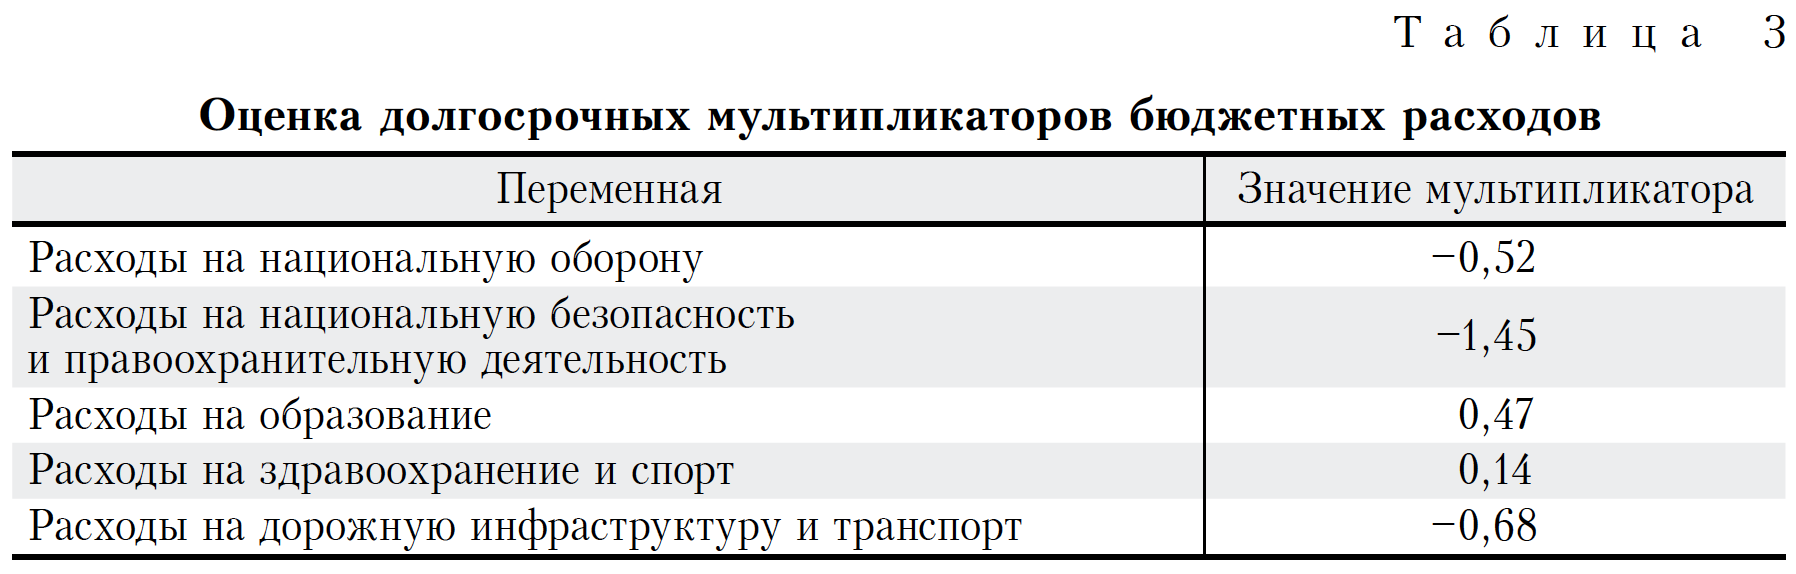 Курсовая работа: Расходы бюджетов РФ на национальную оборону